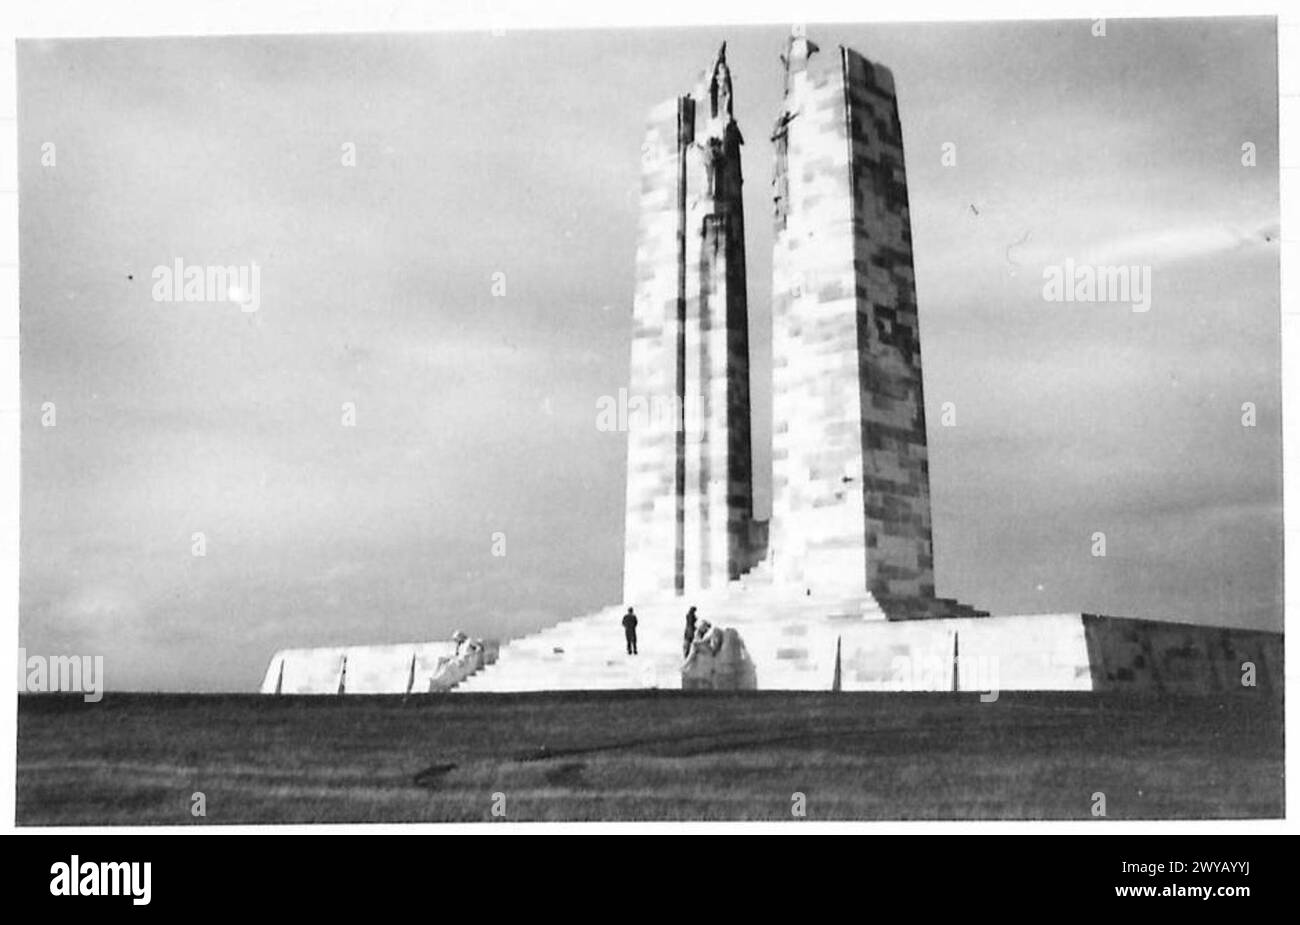 CANADIAN MEMORIAL : VIMY RIDGE - didascalia originale in tempo di guerra: Serie di immagini del Canadian War Memorial a Vimy Ridge. Negativo fotografico, British Army, 21st Army Group Foto Stock